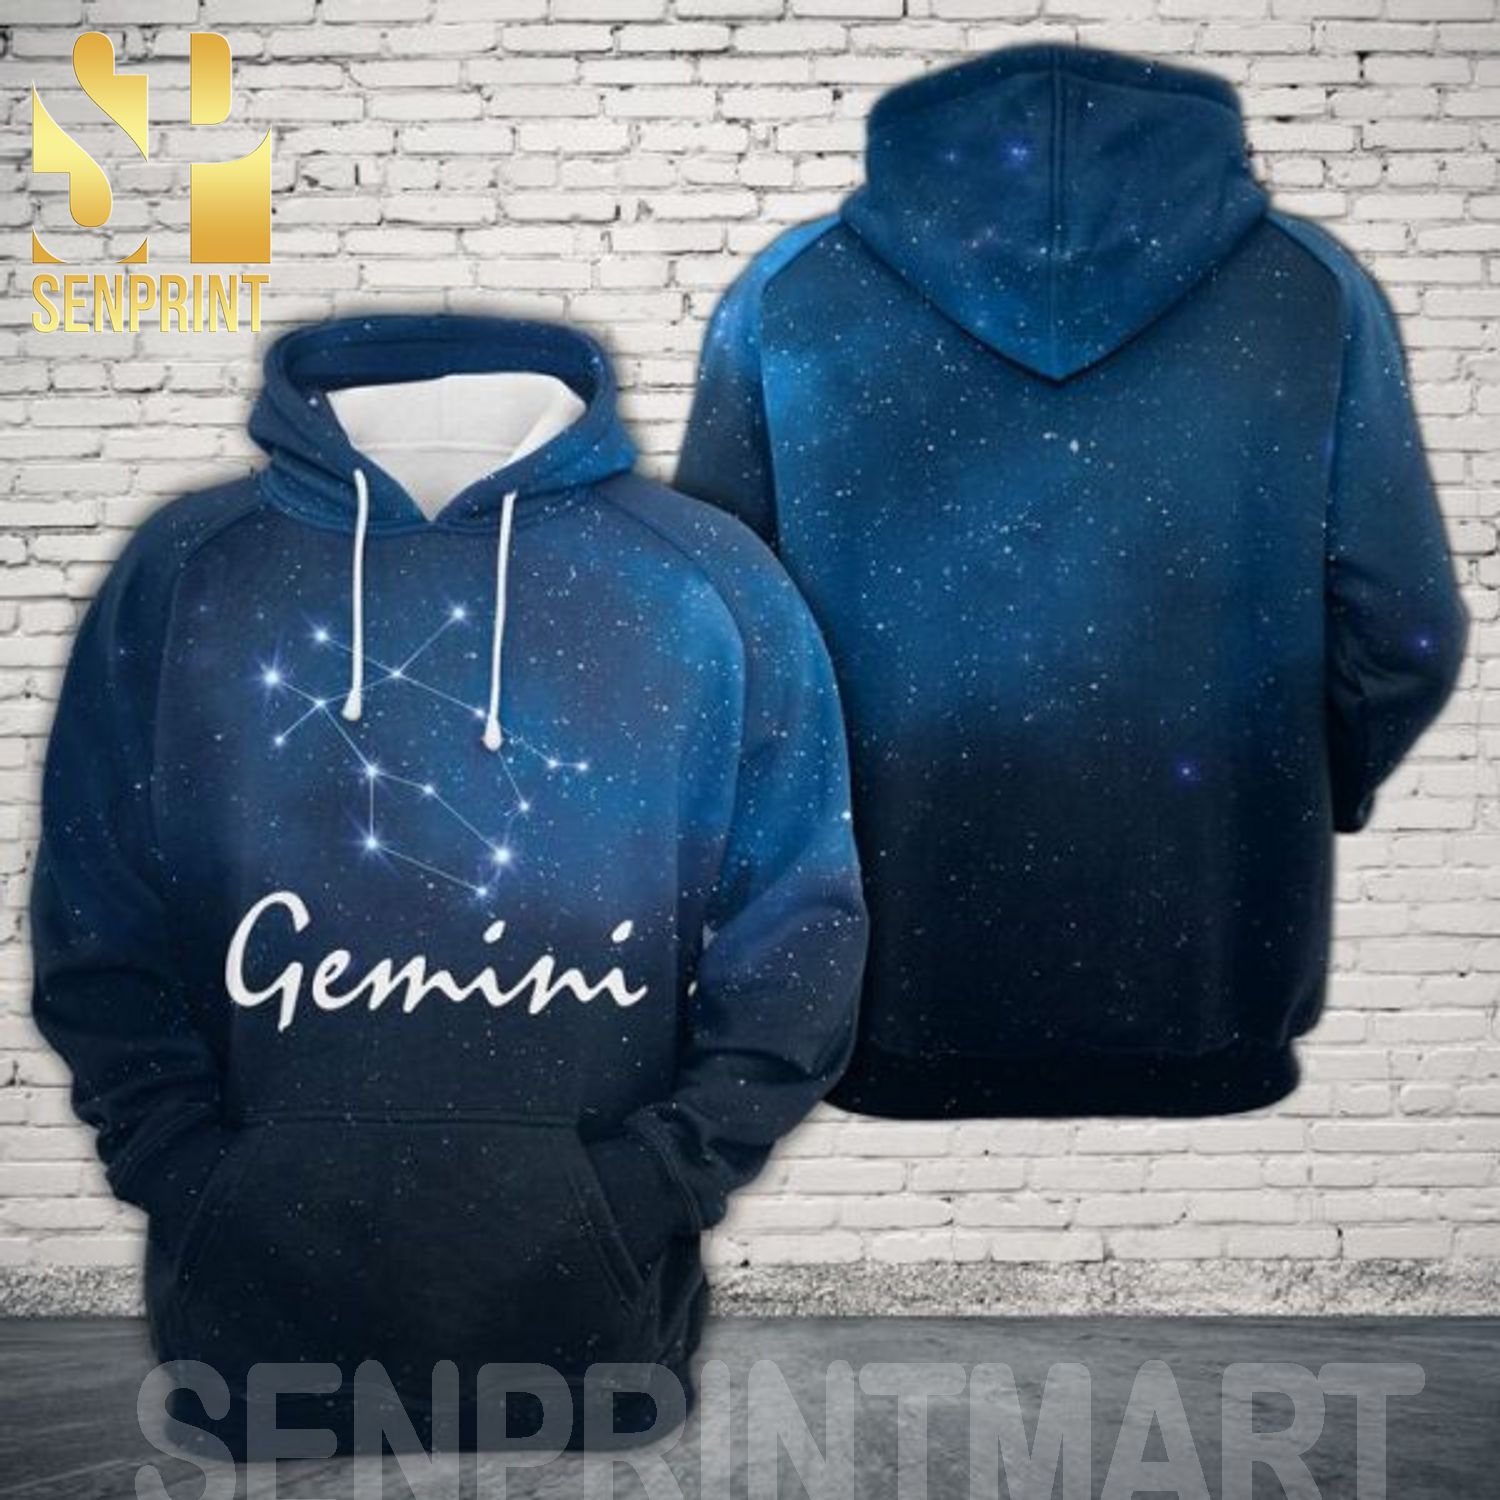 Gemini Horoscope 3D All Over Print Shirt